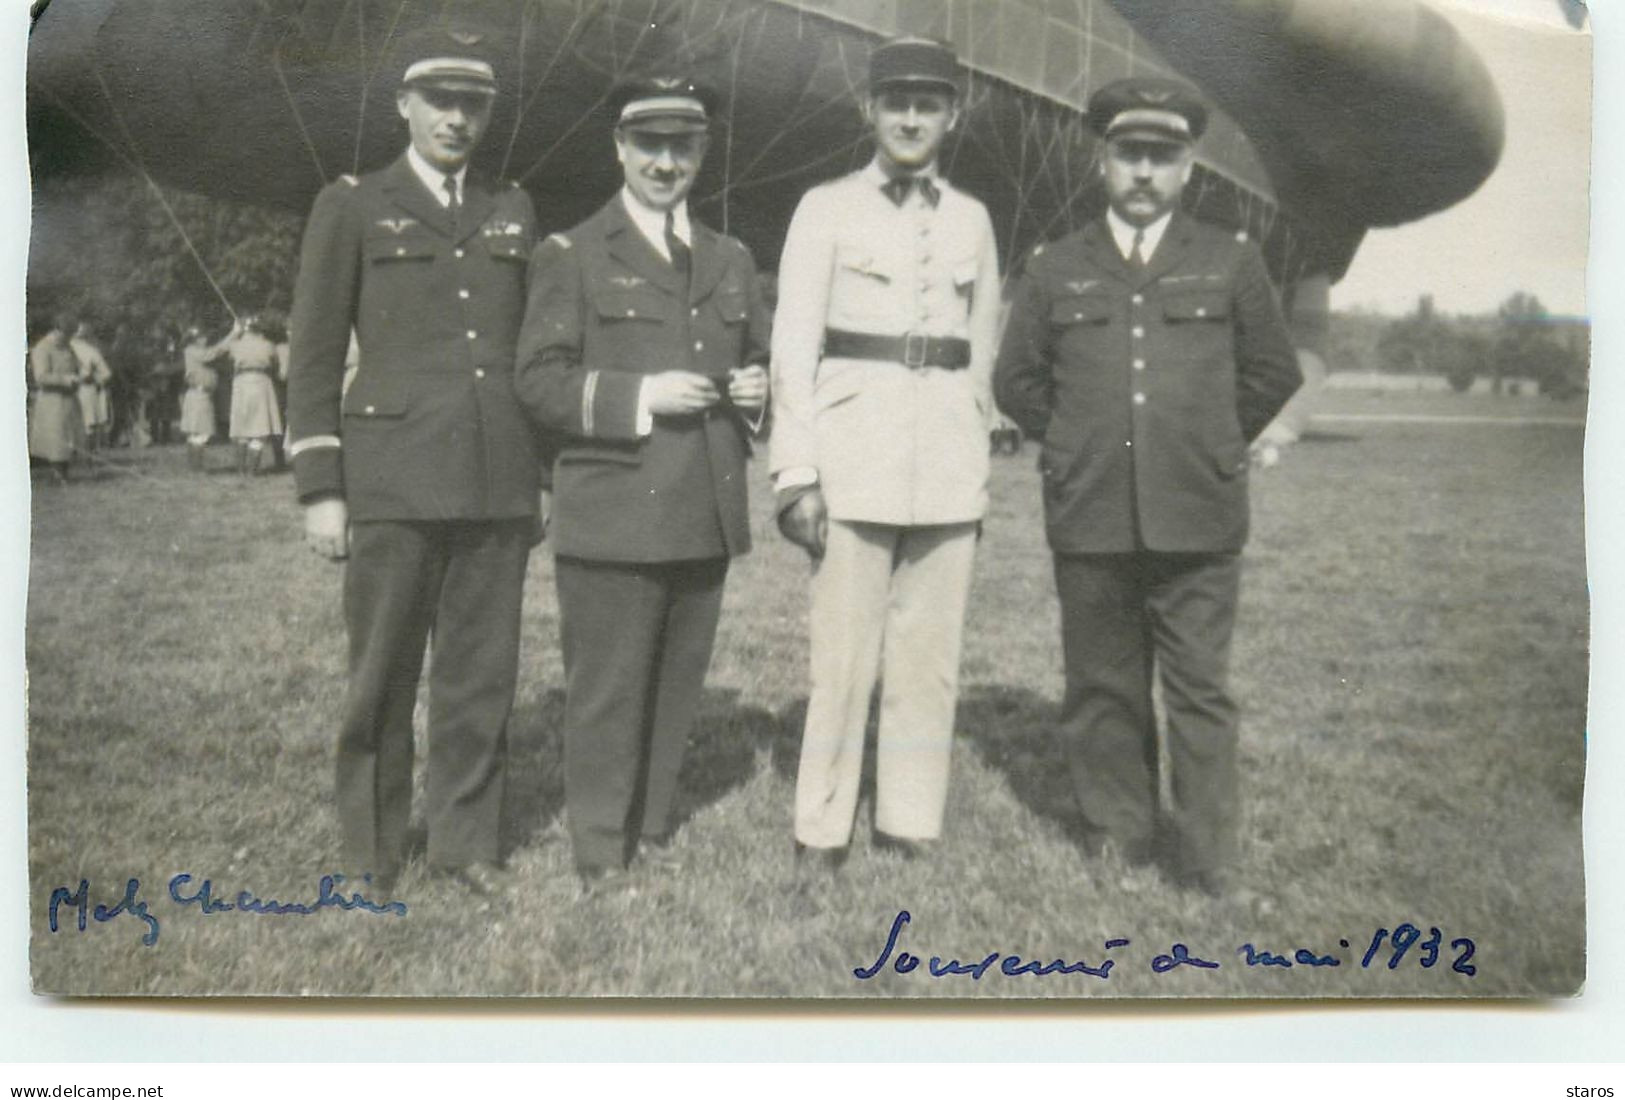 Carte Photo - METZ Aviateurs Près D'un Dirigeable Mai 1932 - Aérodromes